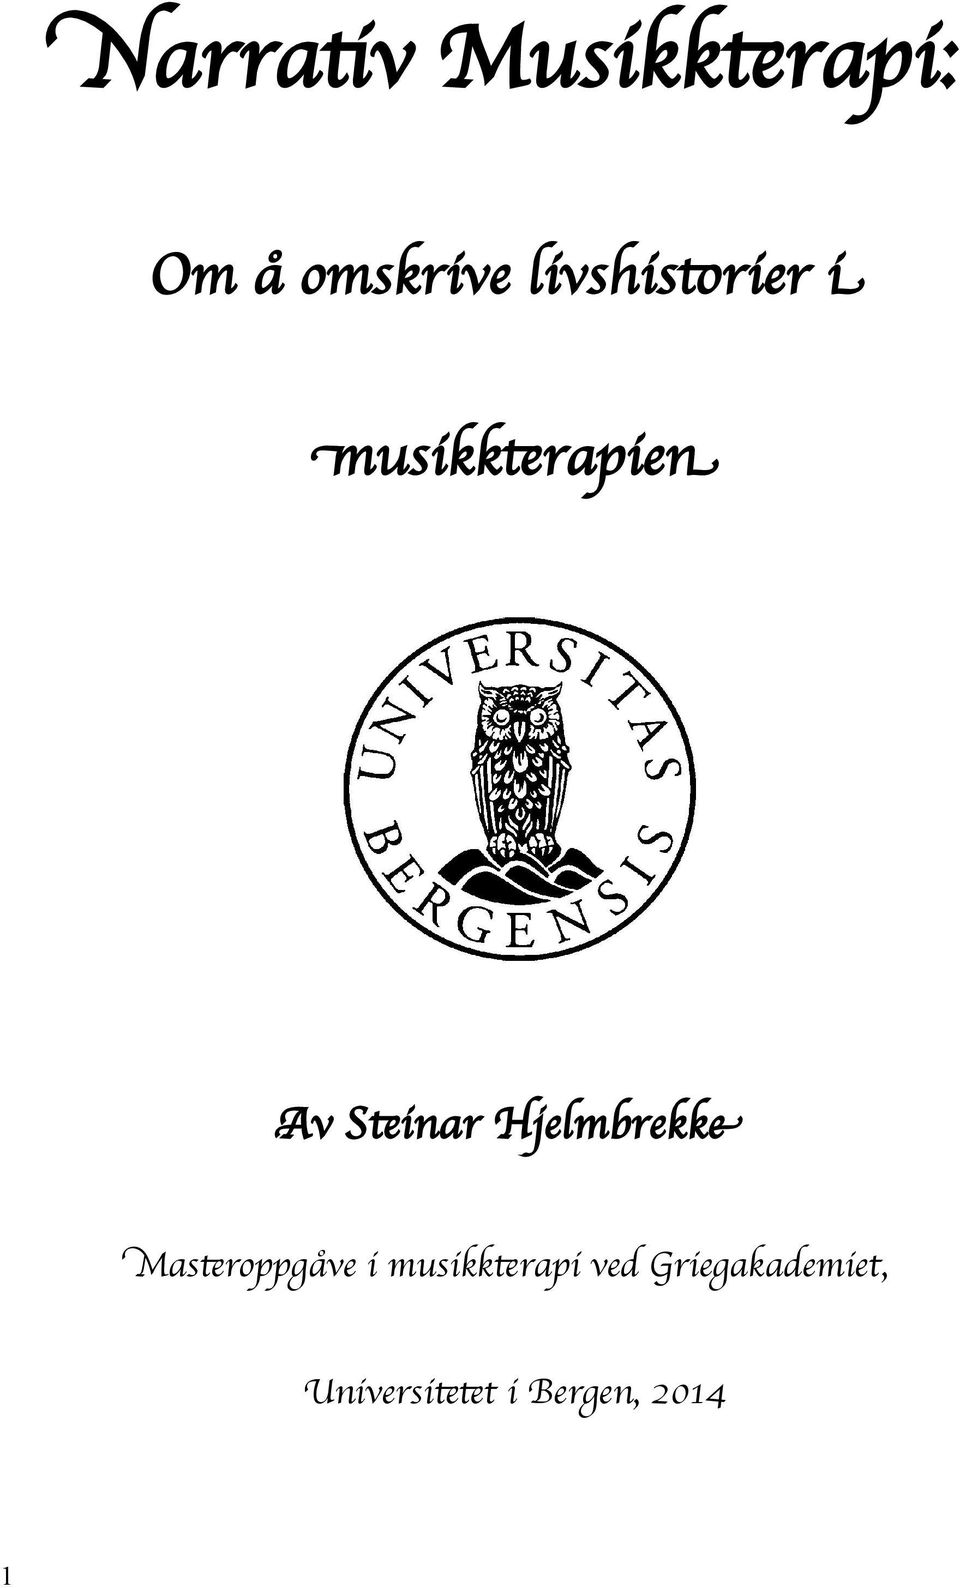 Hjelmbrekke Masteroppgåve i musikkterapi